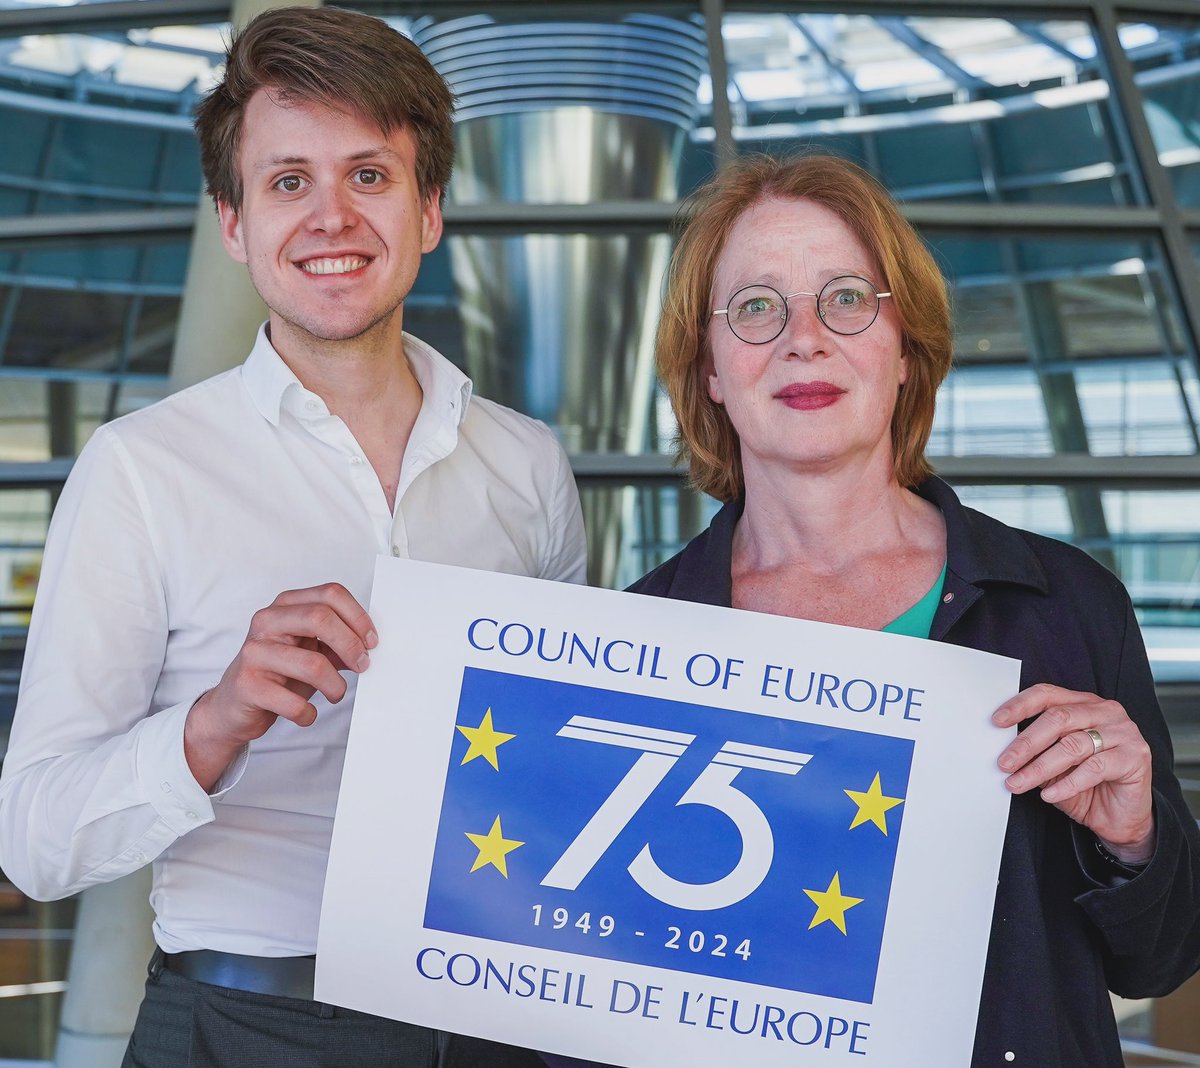 Seit 75 Jahren fördert der #Europarat #Menschenrechte, #Demokratie und #Rechtsstaatlichkeit. Als stellv. Mitglied der Parlamentarischen Versammlung gratuliere ich zum Geburtstag! Guter Anlass, den Europarat heute im #Bundestag zu feiern! @max_lucks #pver